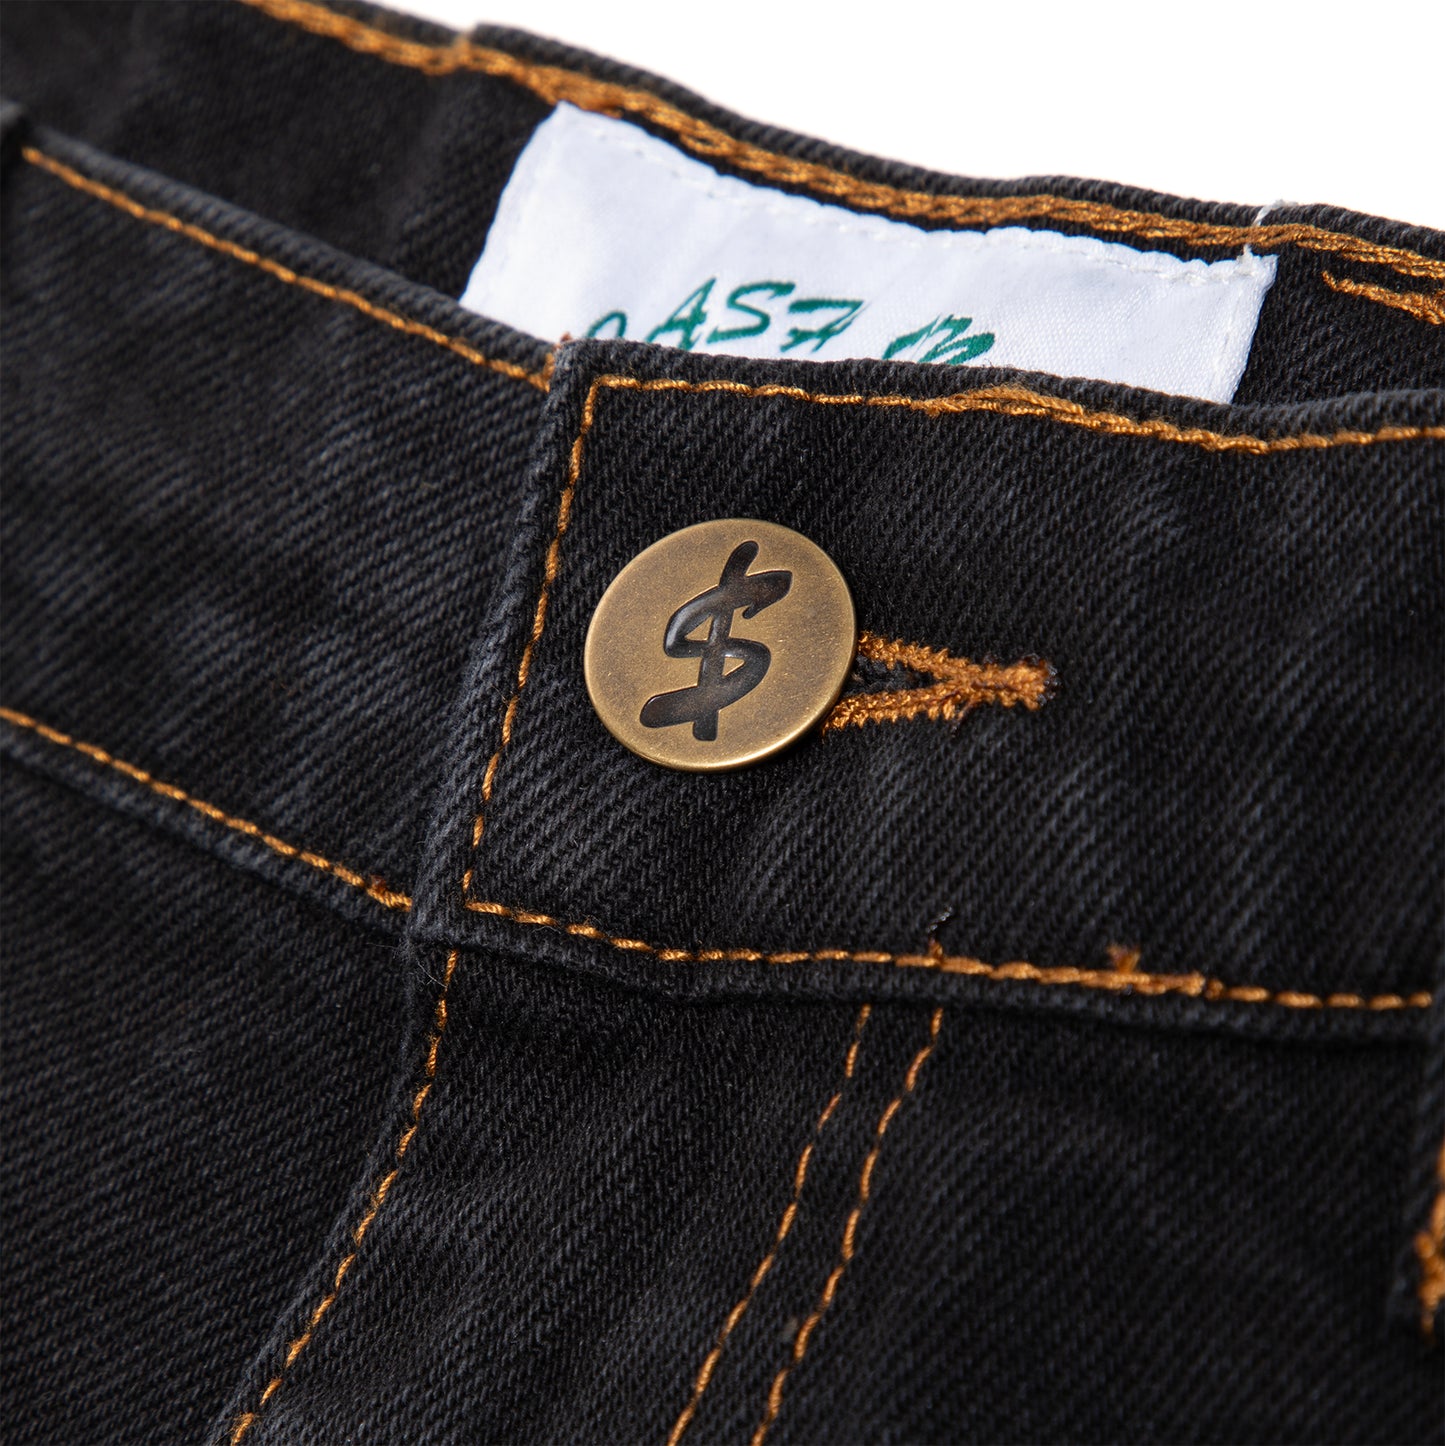 Cash Only Jeans Denim Shorts (Washed Black)